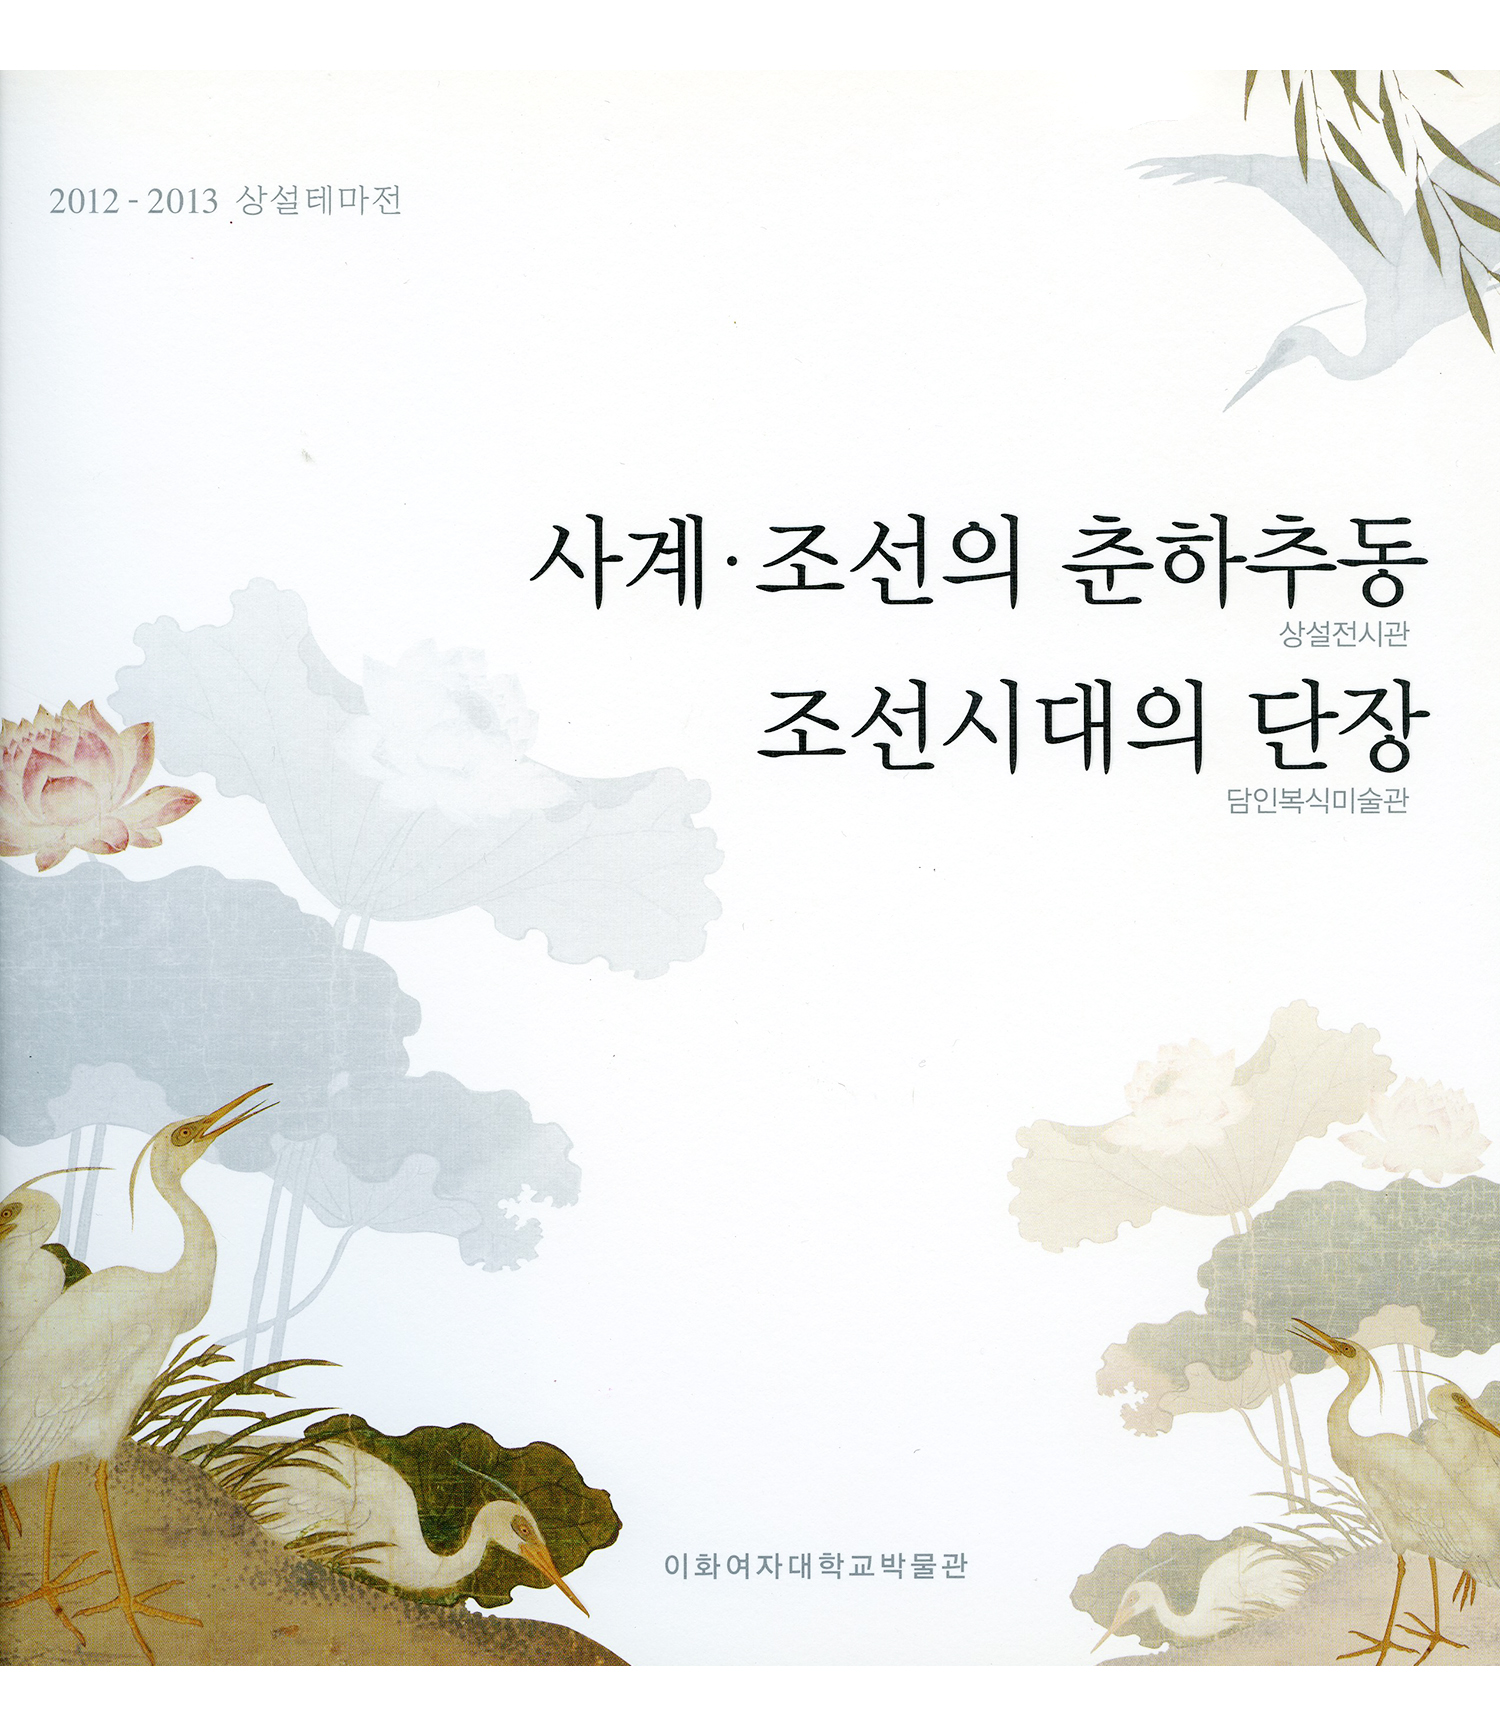 [상설테마전] 사계(四季): 조선의 춘하추동, 조선시대의 단장